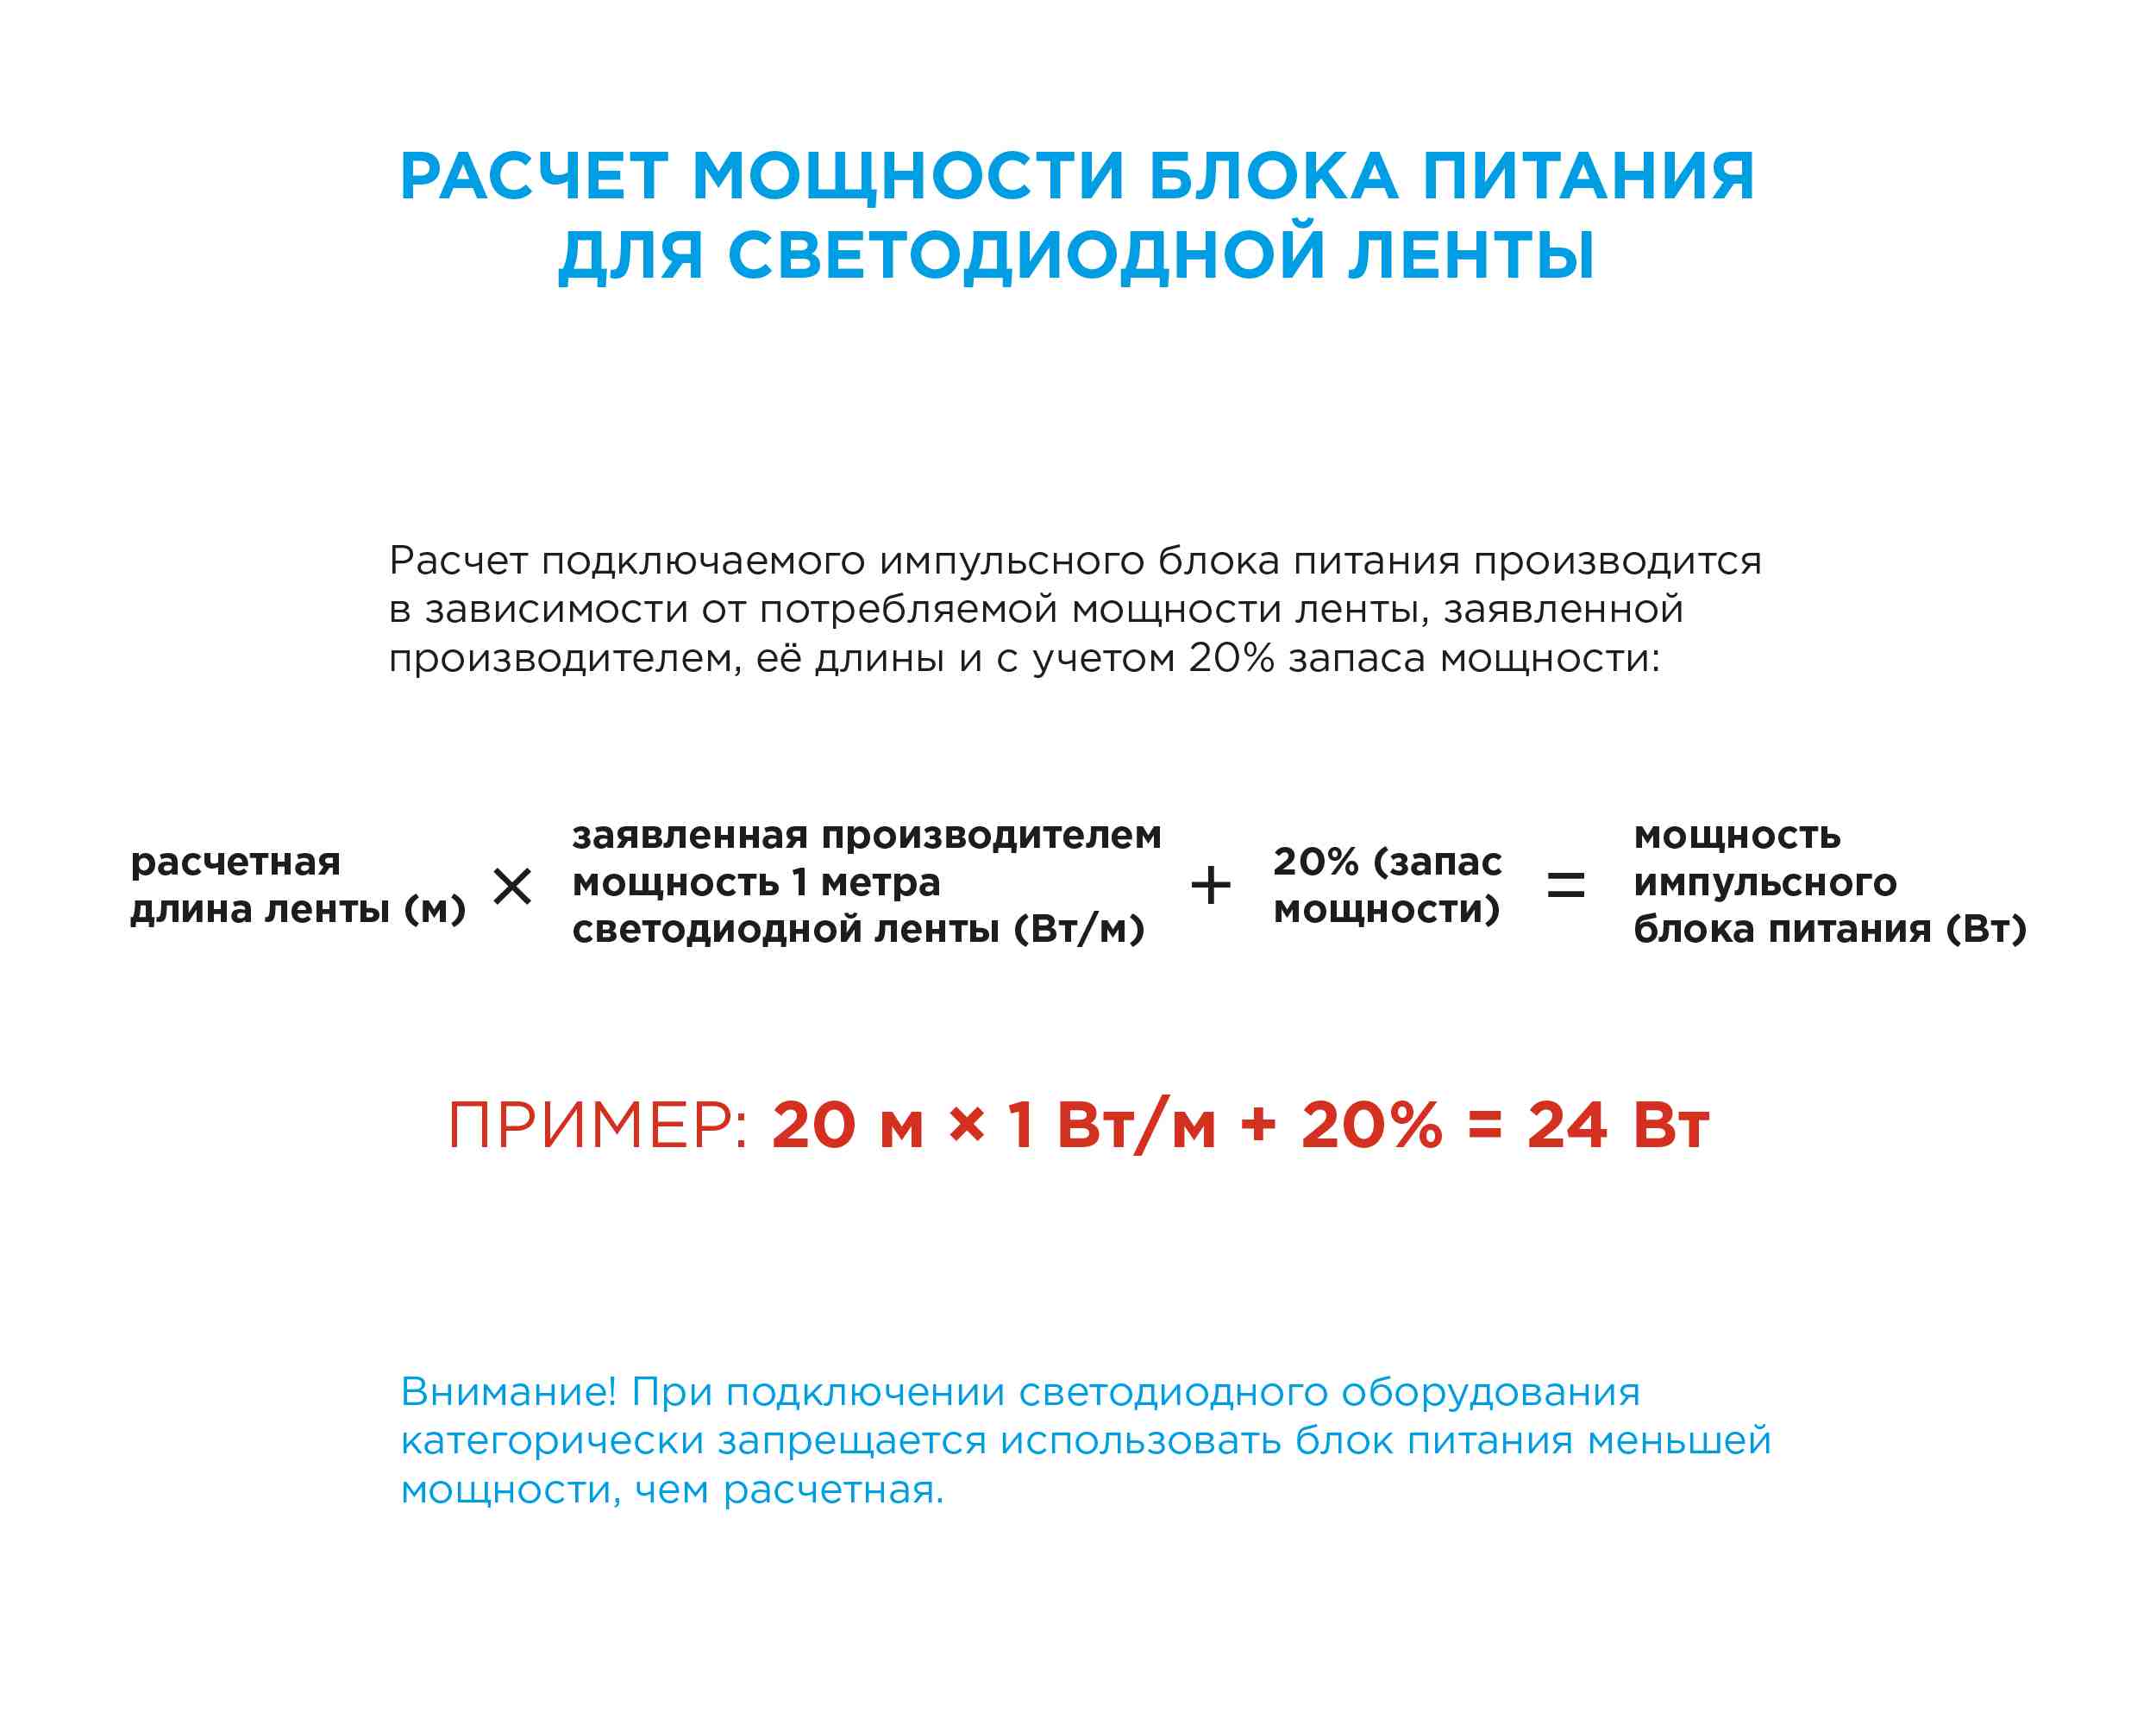 Светодиодная лента Apeyron 12В СТ 4,8Вт/м smd3528, 60д/м IP20 5м красная 00-35 в Москве